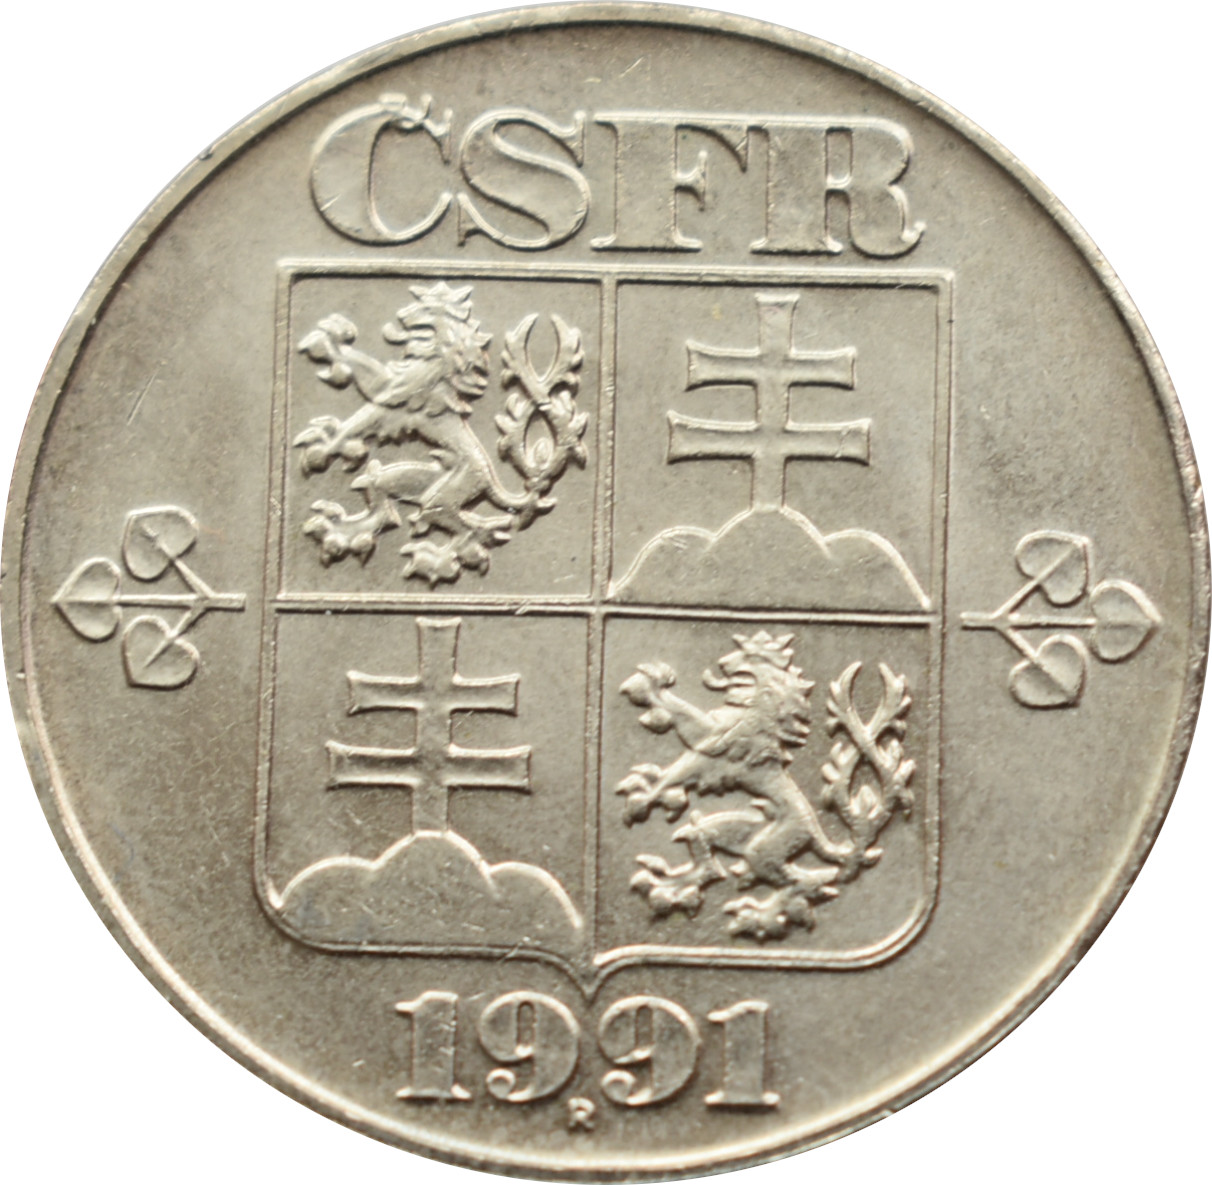 ČSFR 5 Kčs 1991